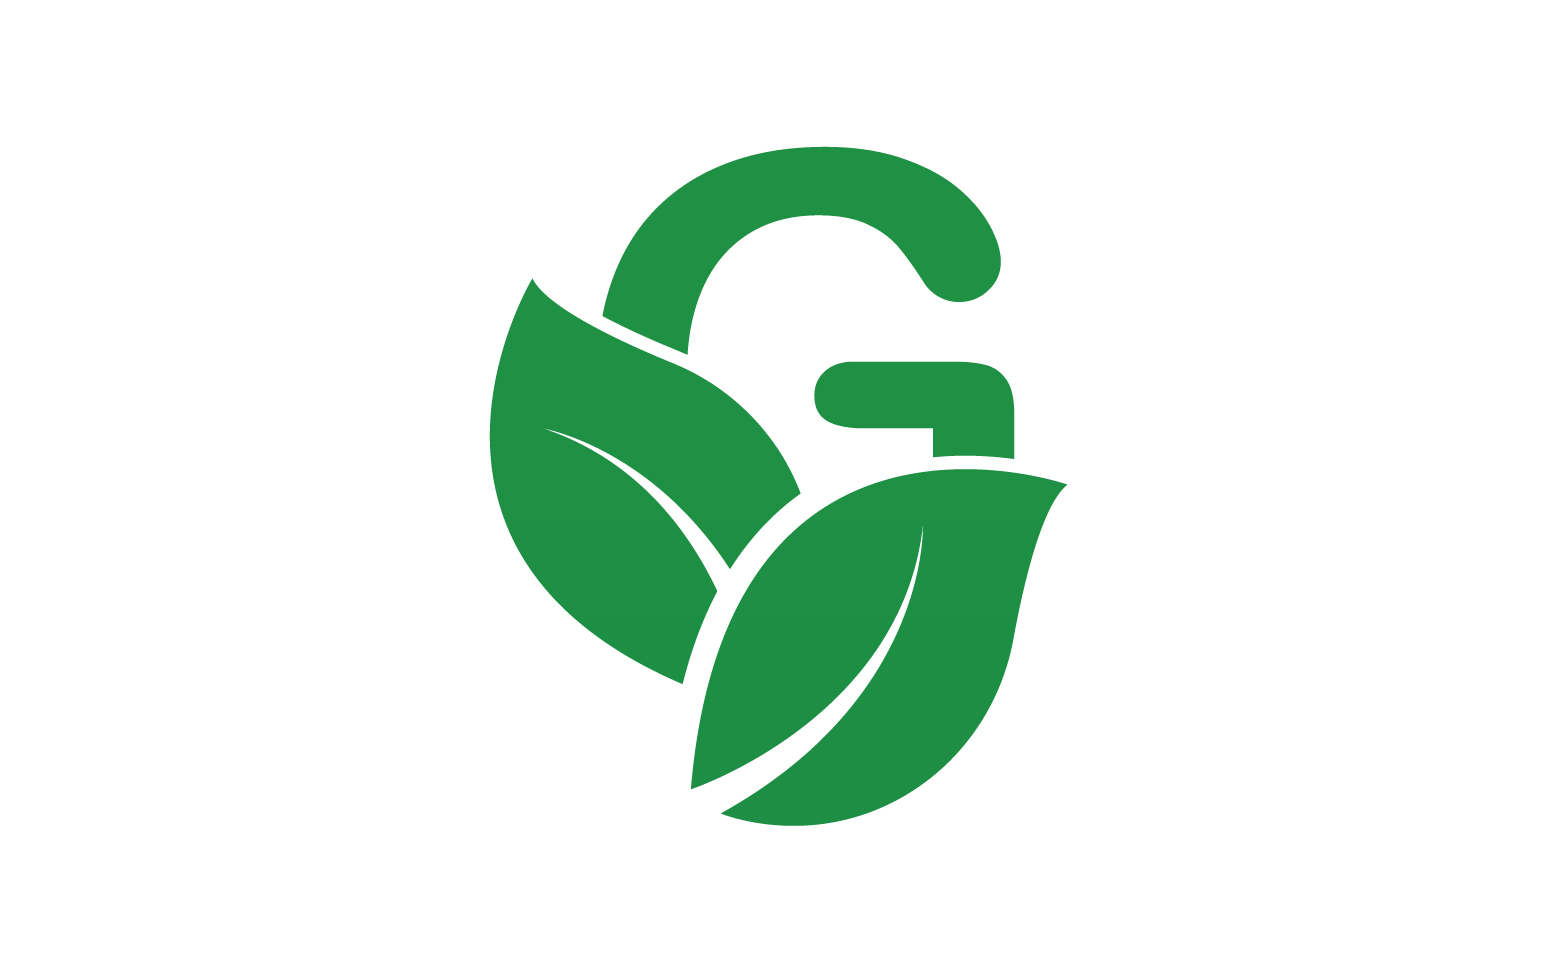 G letter leaf green logo icon version v43